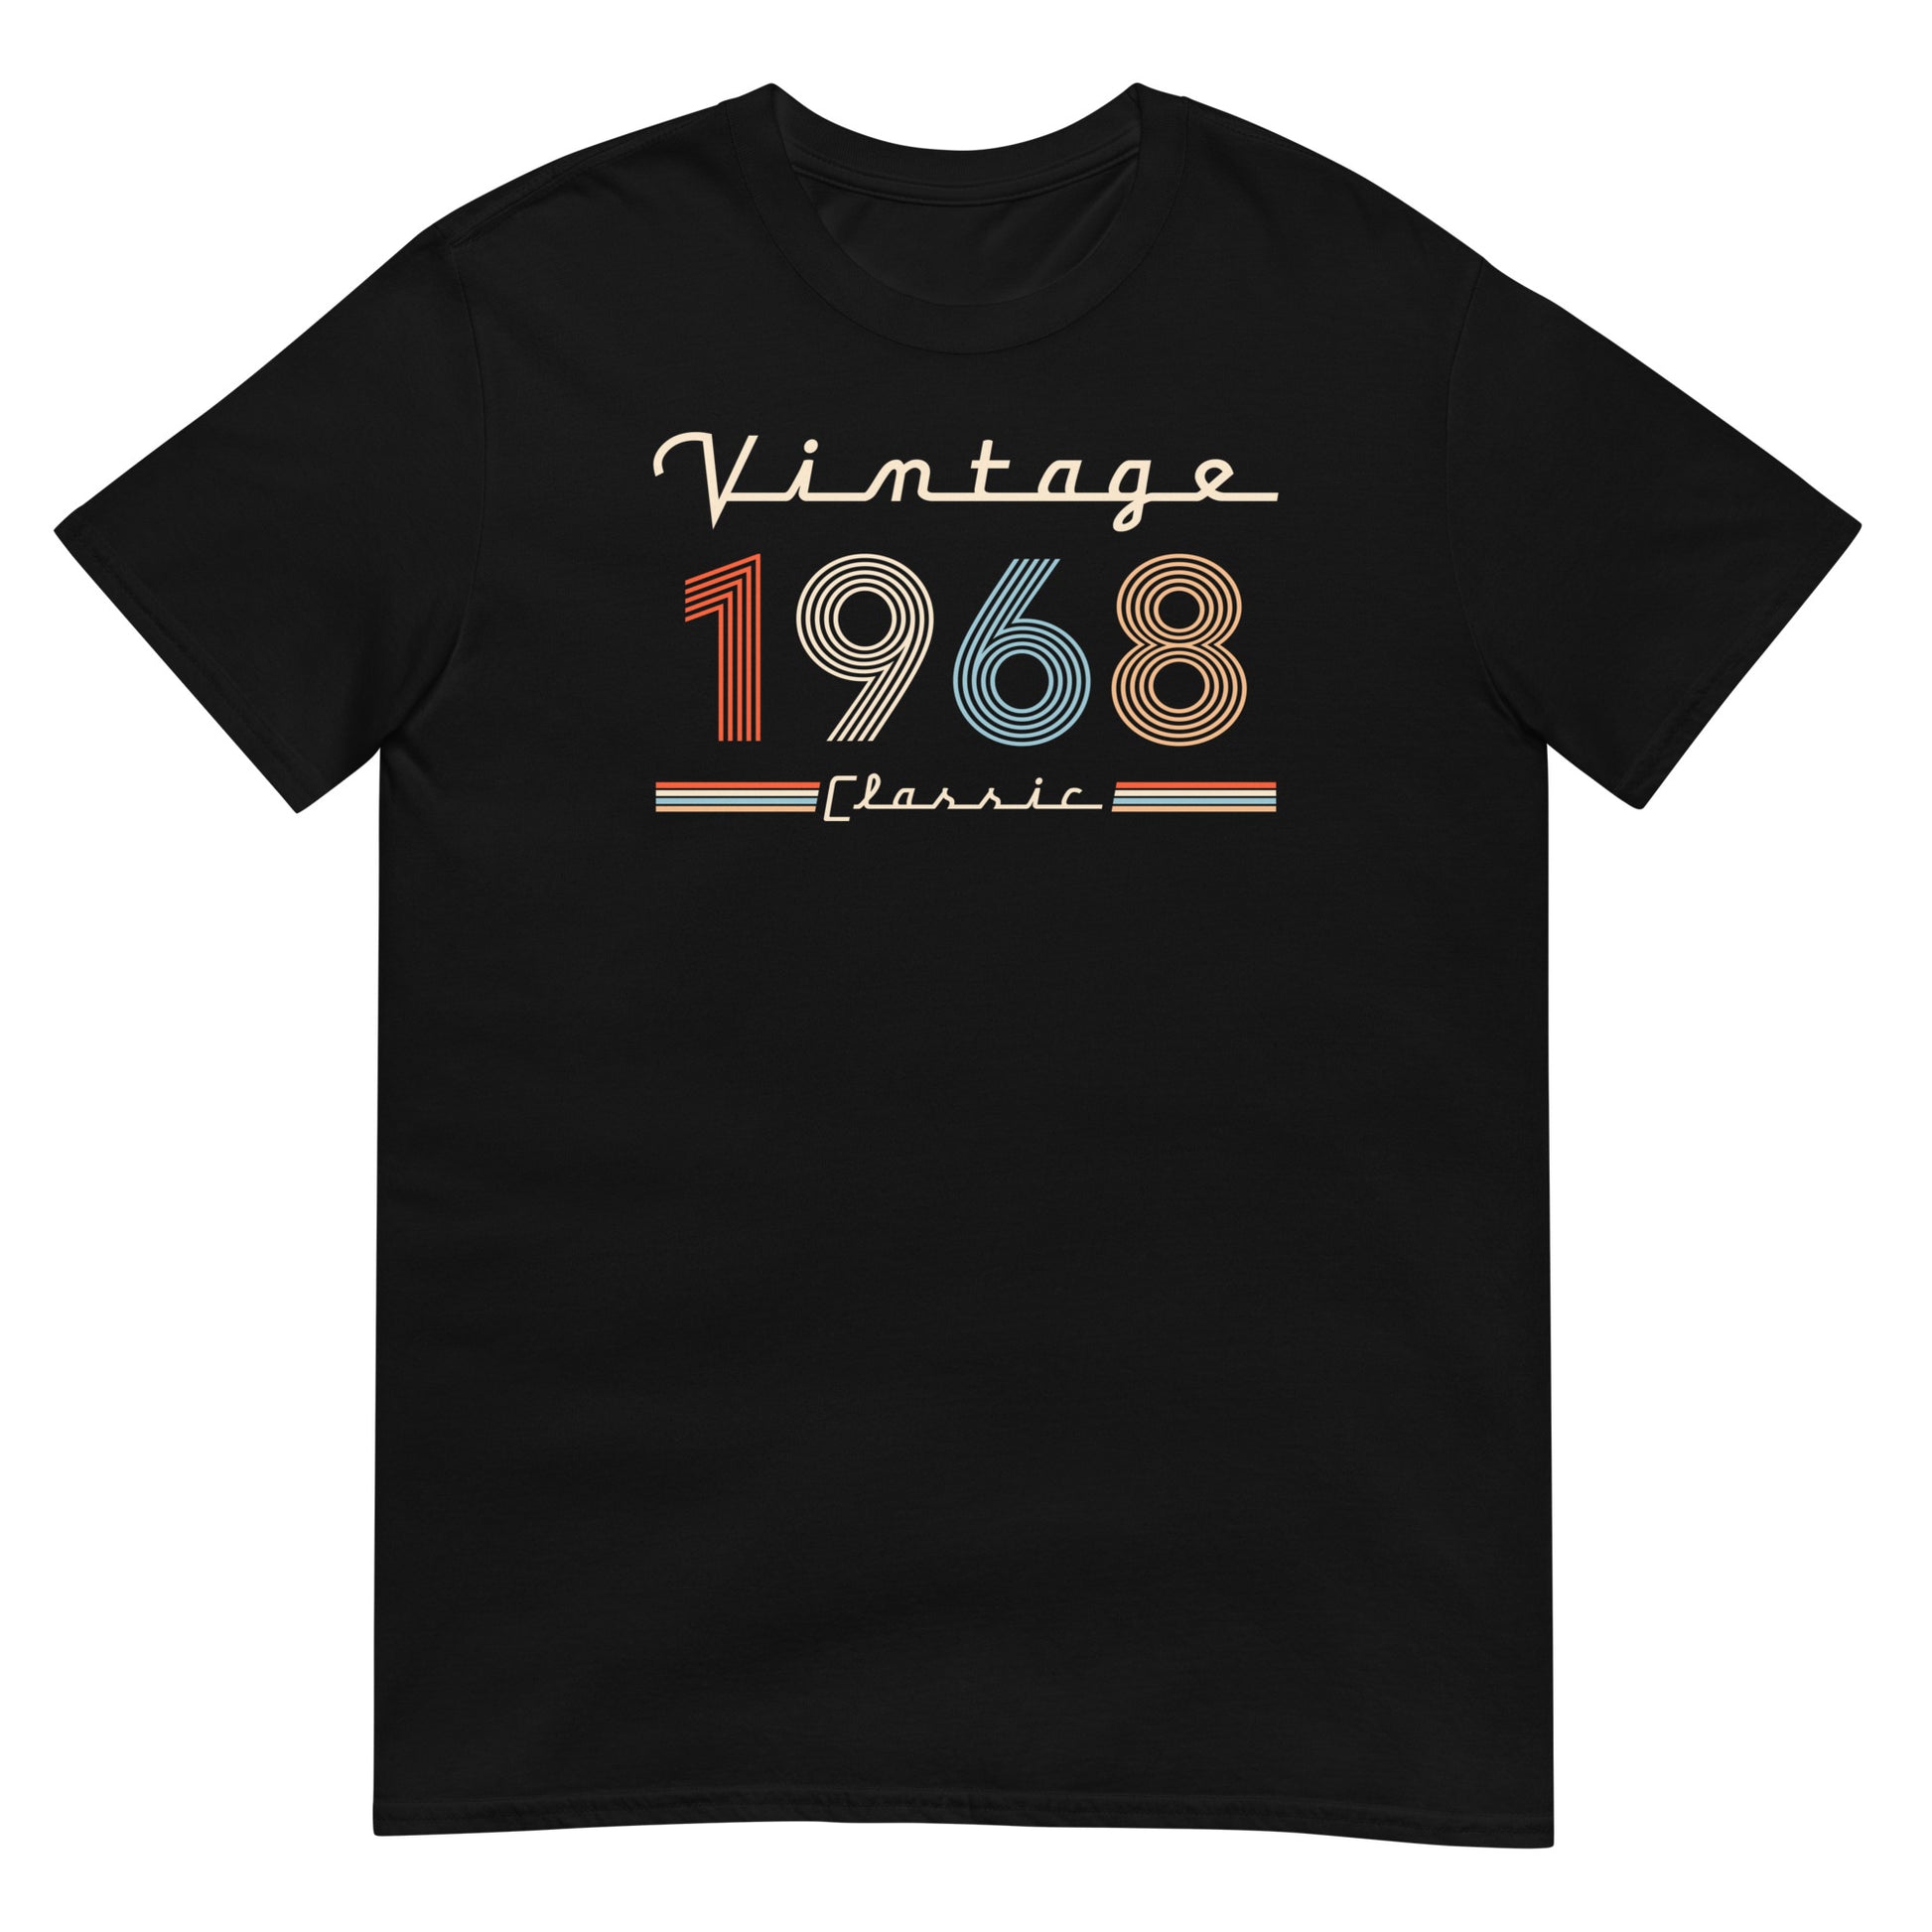 Camiseta 1968 - Vintage Classic - Cumpleaños